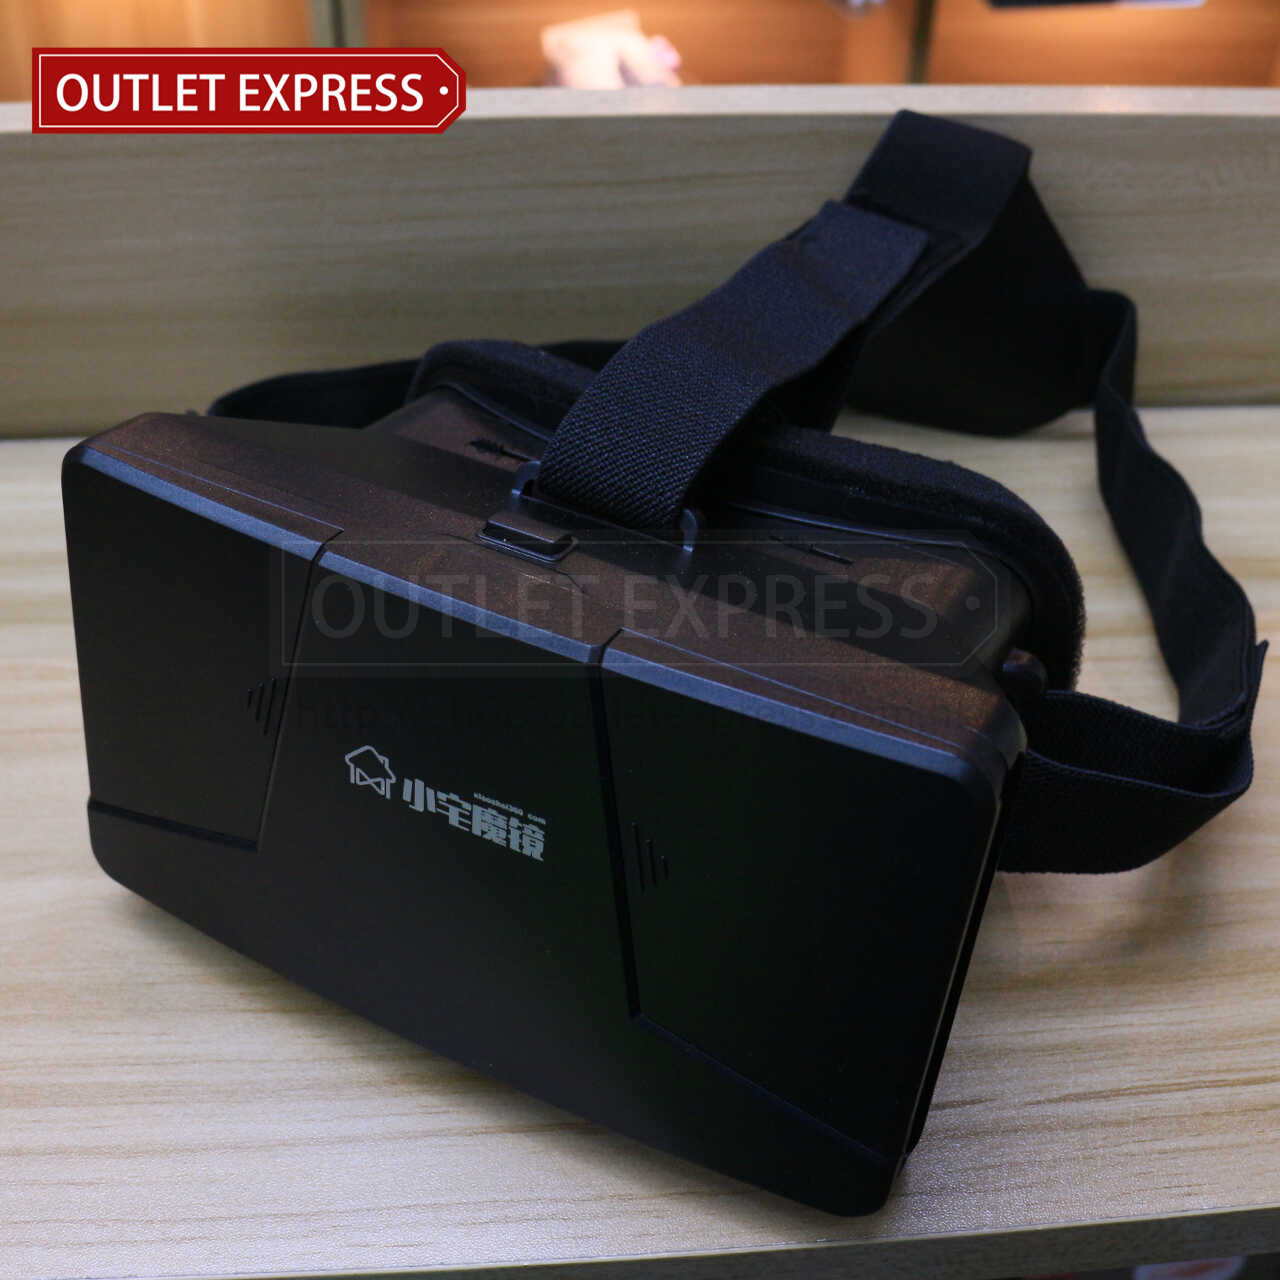 小宅魔鏡一代  VR虛擬實境眼鏡 正面圖 - Outlet Express HK生活百貨城實拍相片